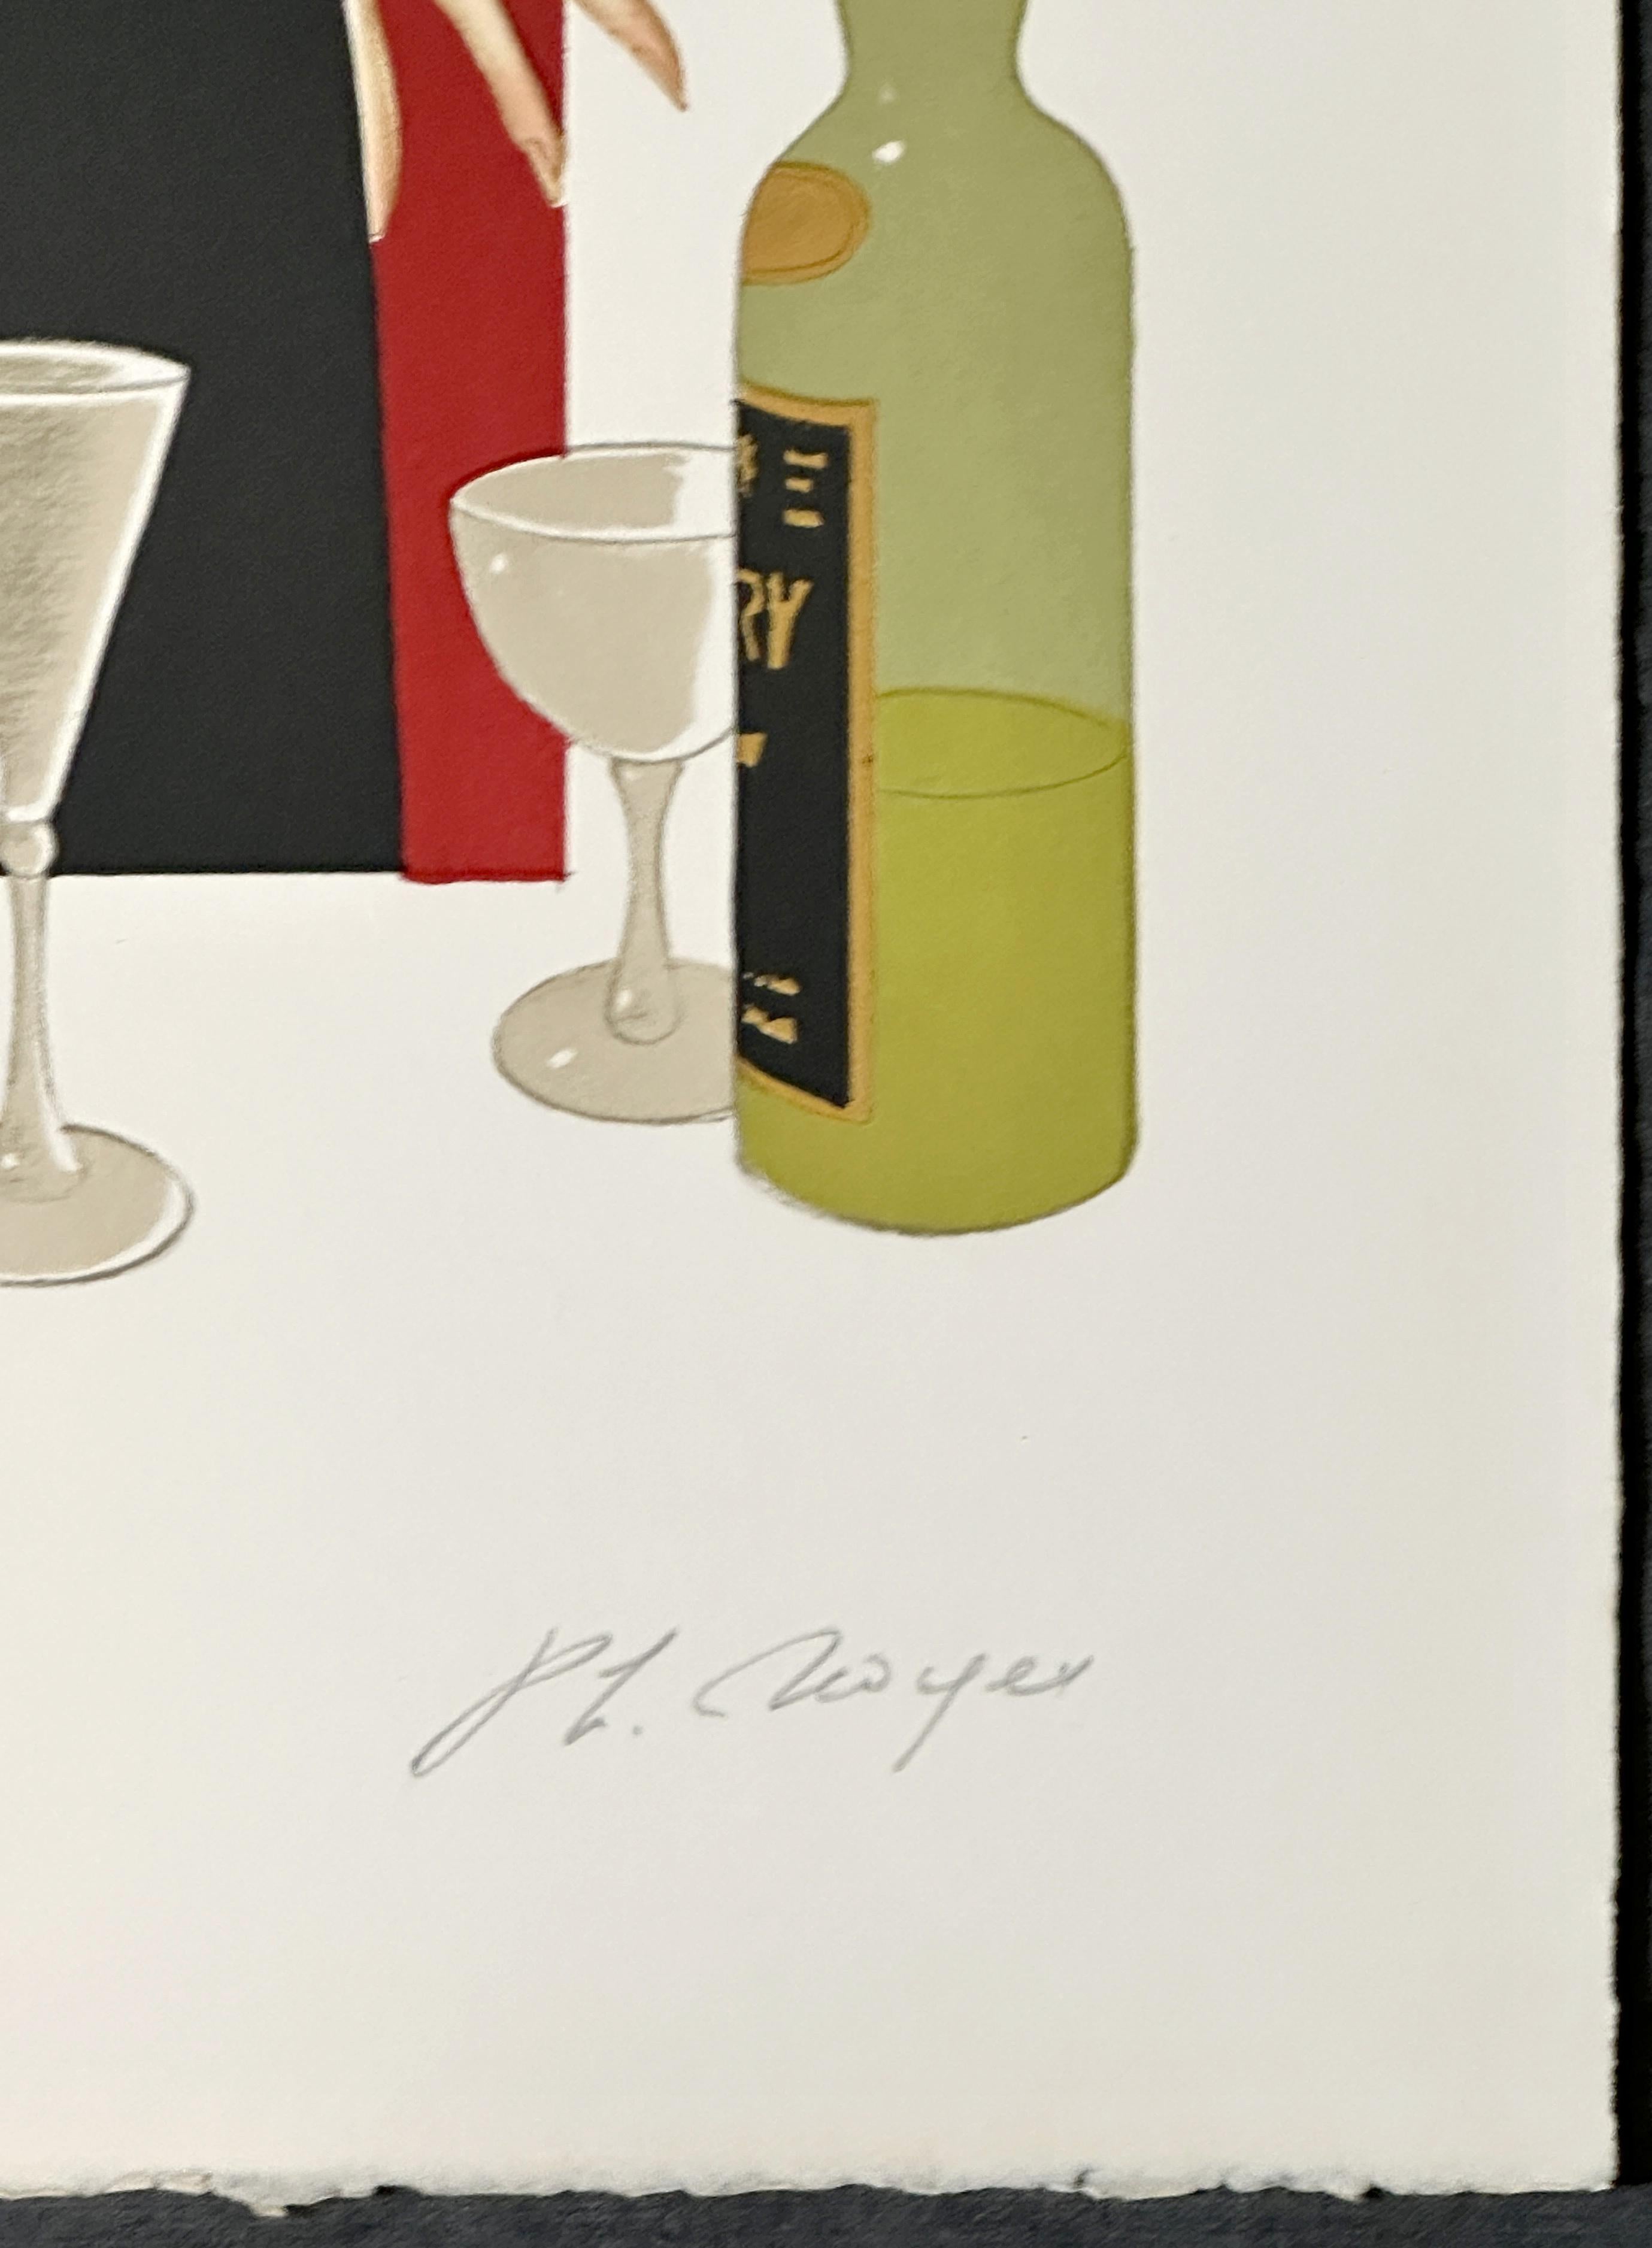 Philippe Noyer
Femme Chez Maxim
1980
Lithografie auf Arches Archival Paper 34'' x 23''
Auflage: Mit Bleistift signiert und mit 222/325 bezeichnet
Einige leichte Handhabungsknicke auf dem Druck.